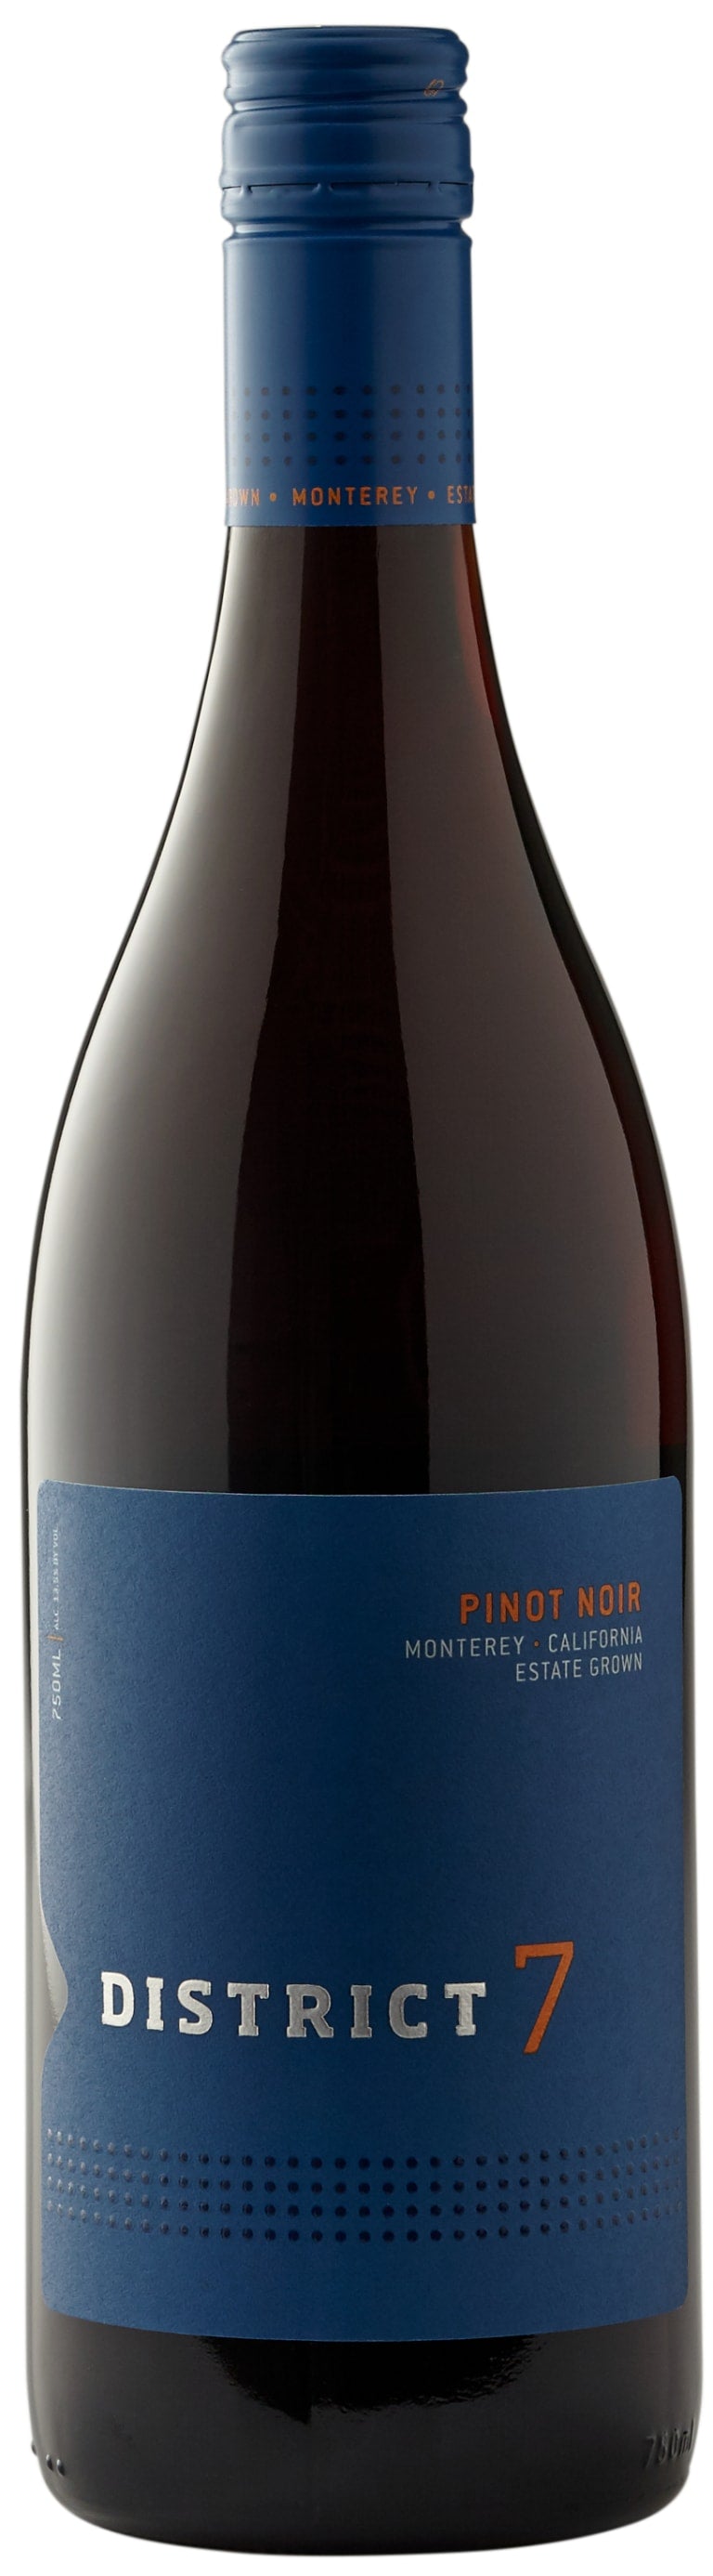 District 7 Pinot Noir 2017